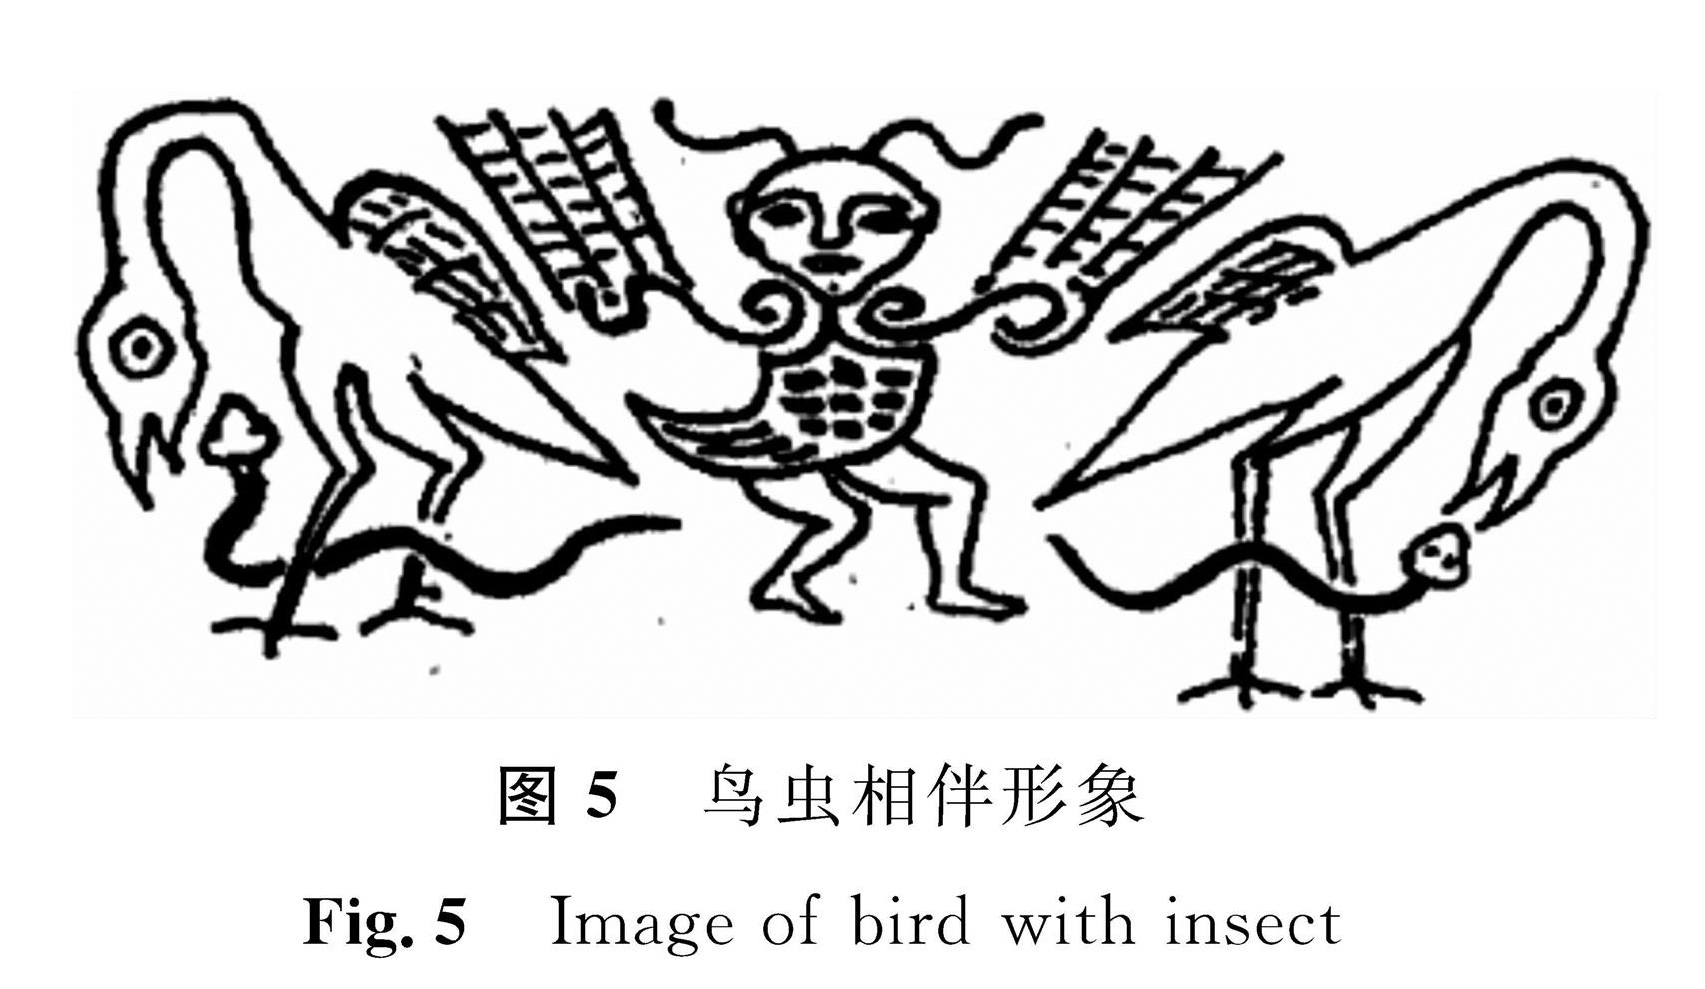 图5 鸟虫相伴形象<br/>Fig.5 Image of bird with insect